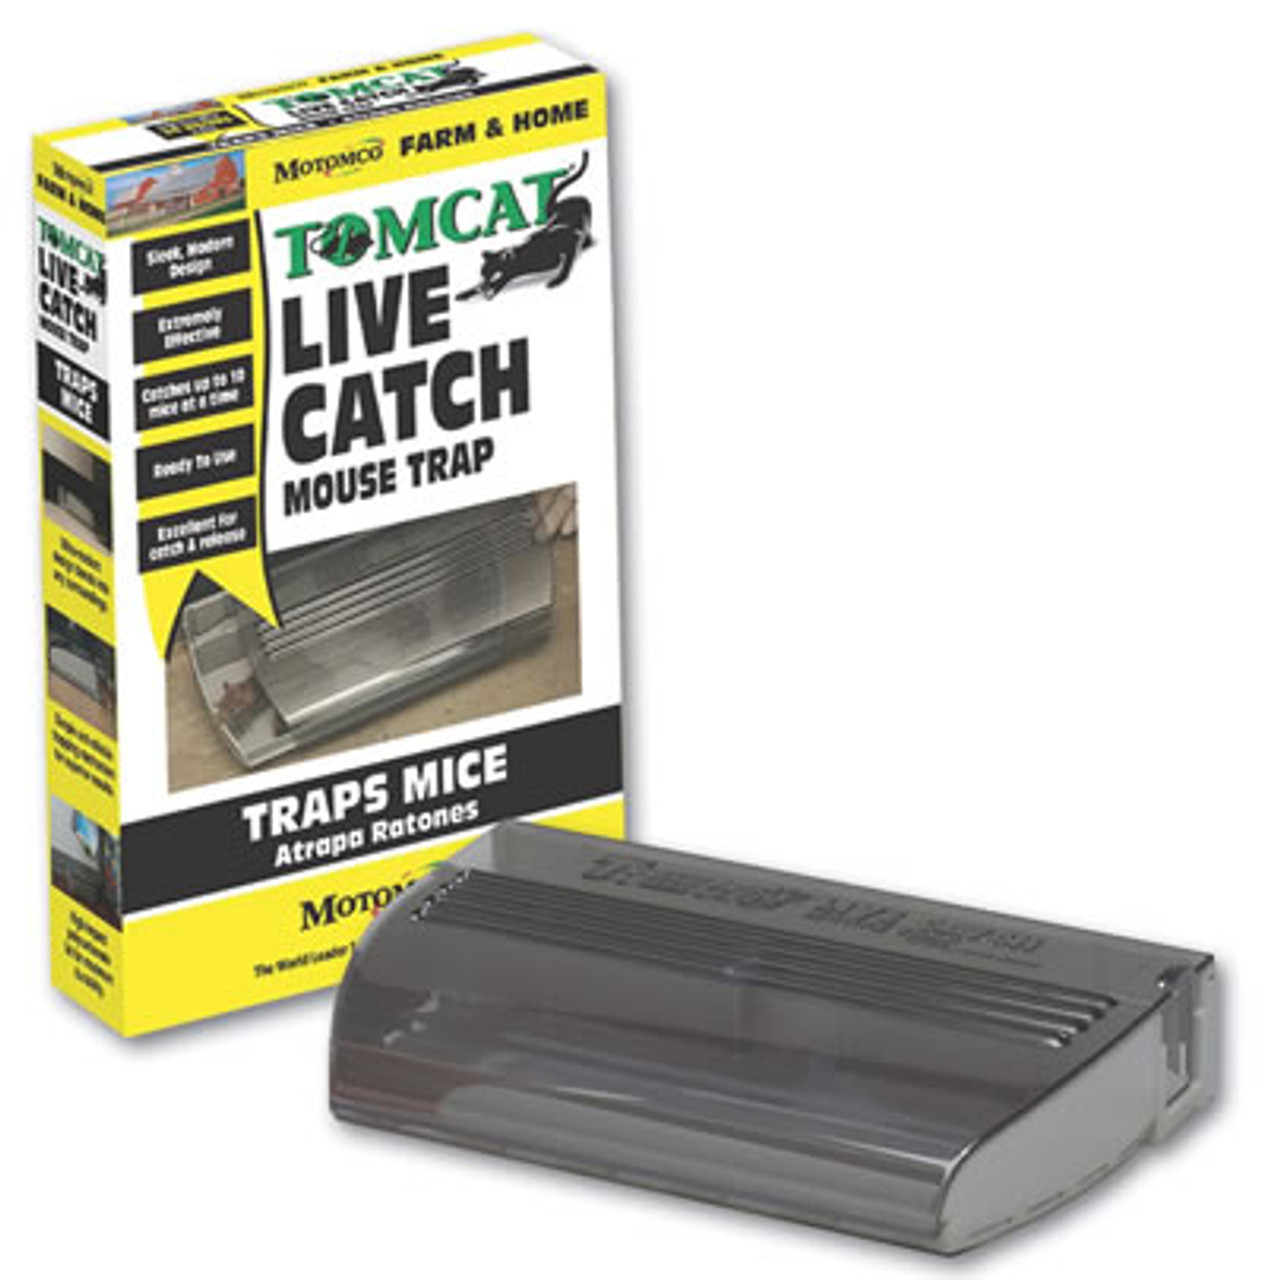 Effective Live Mouse Traps